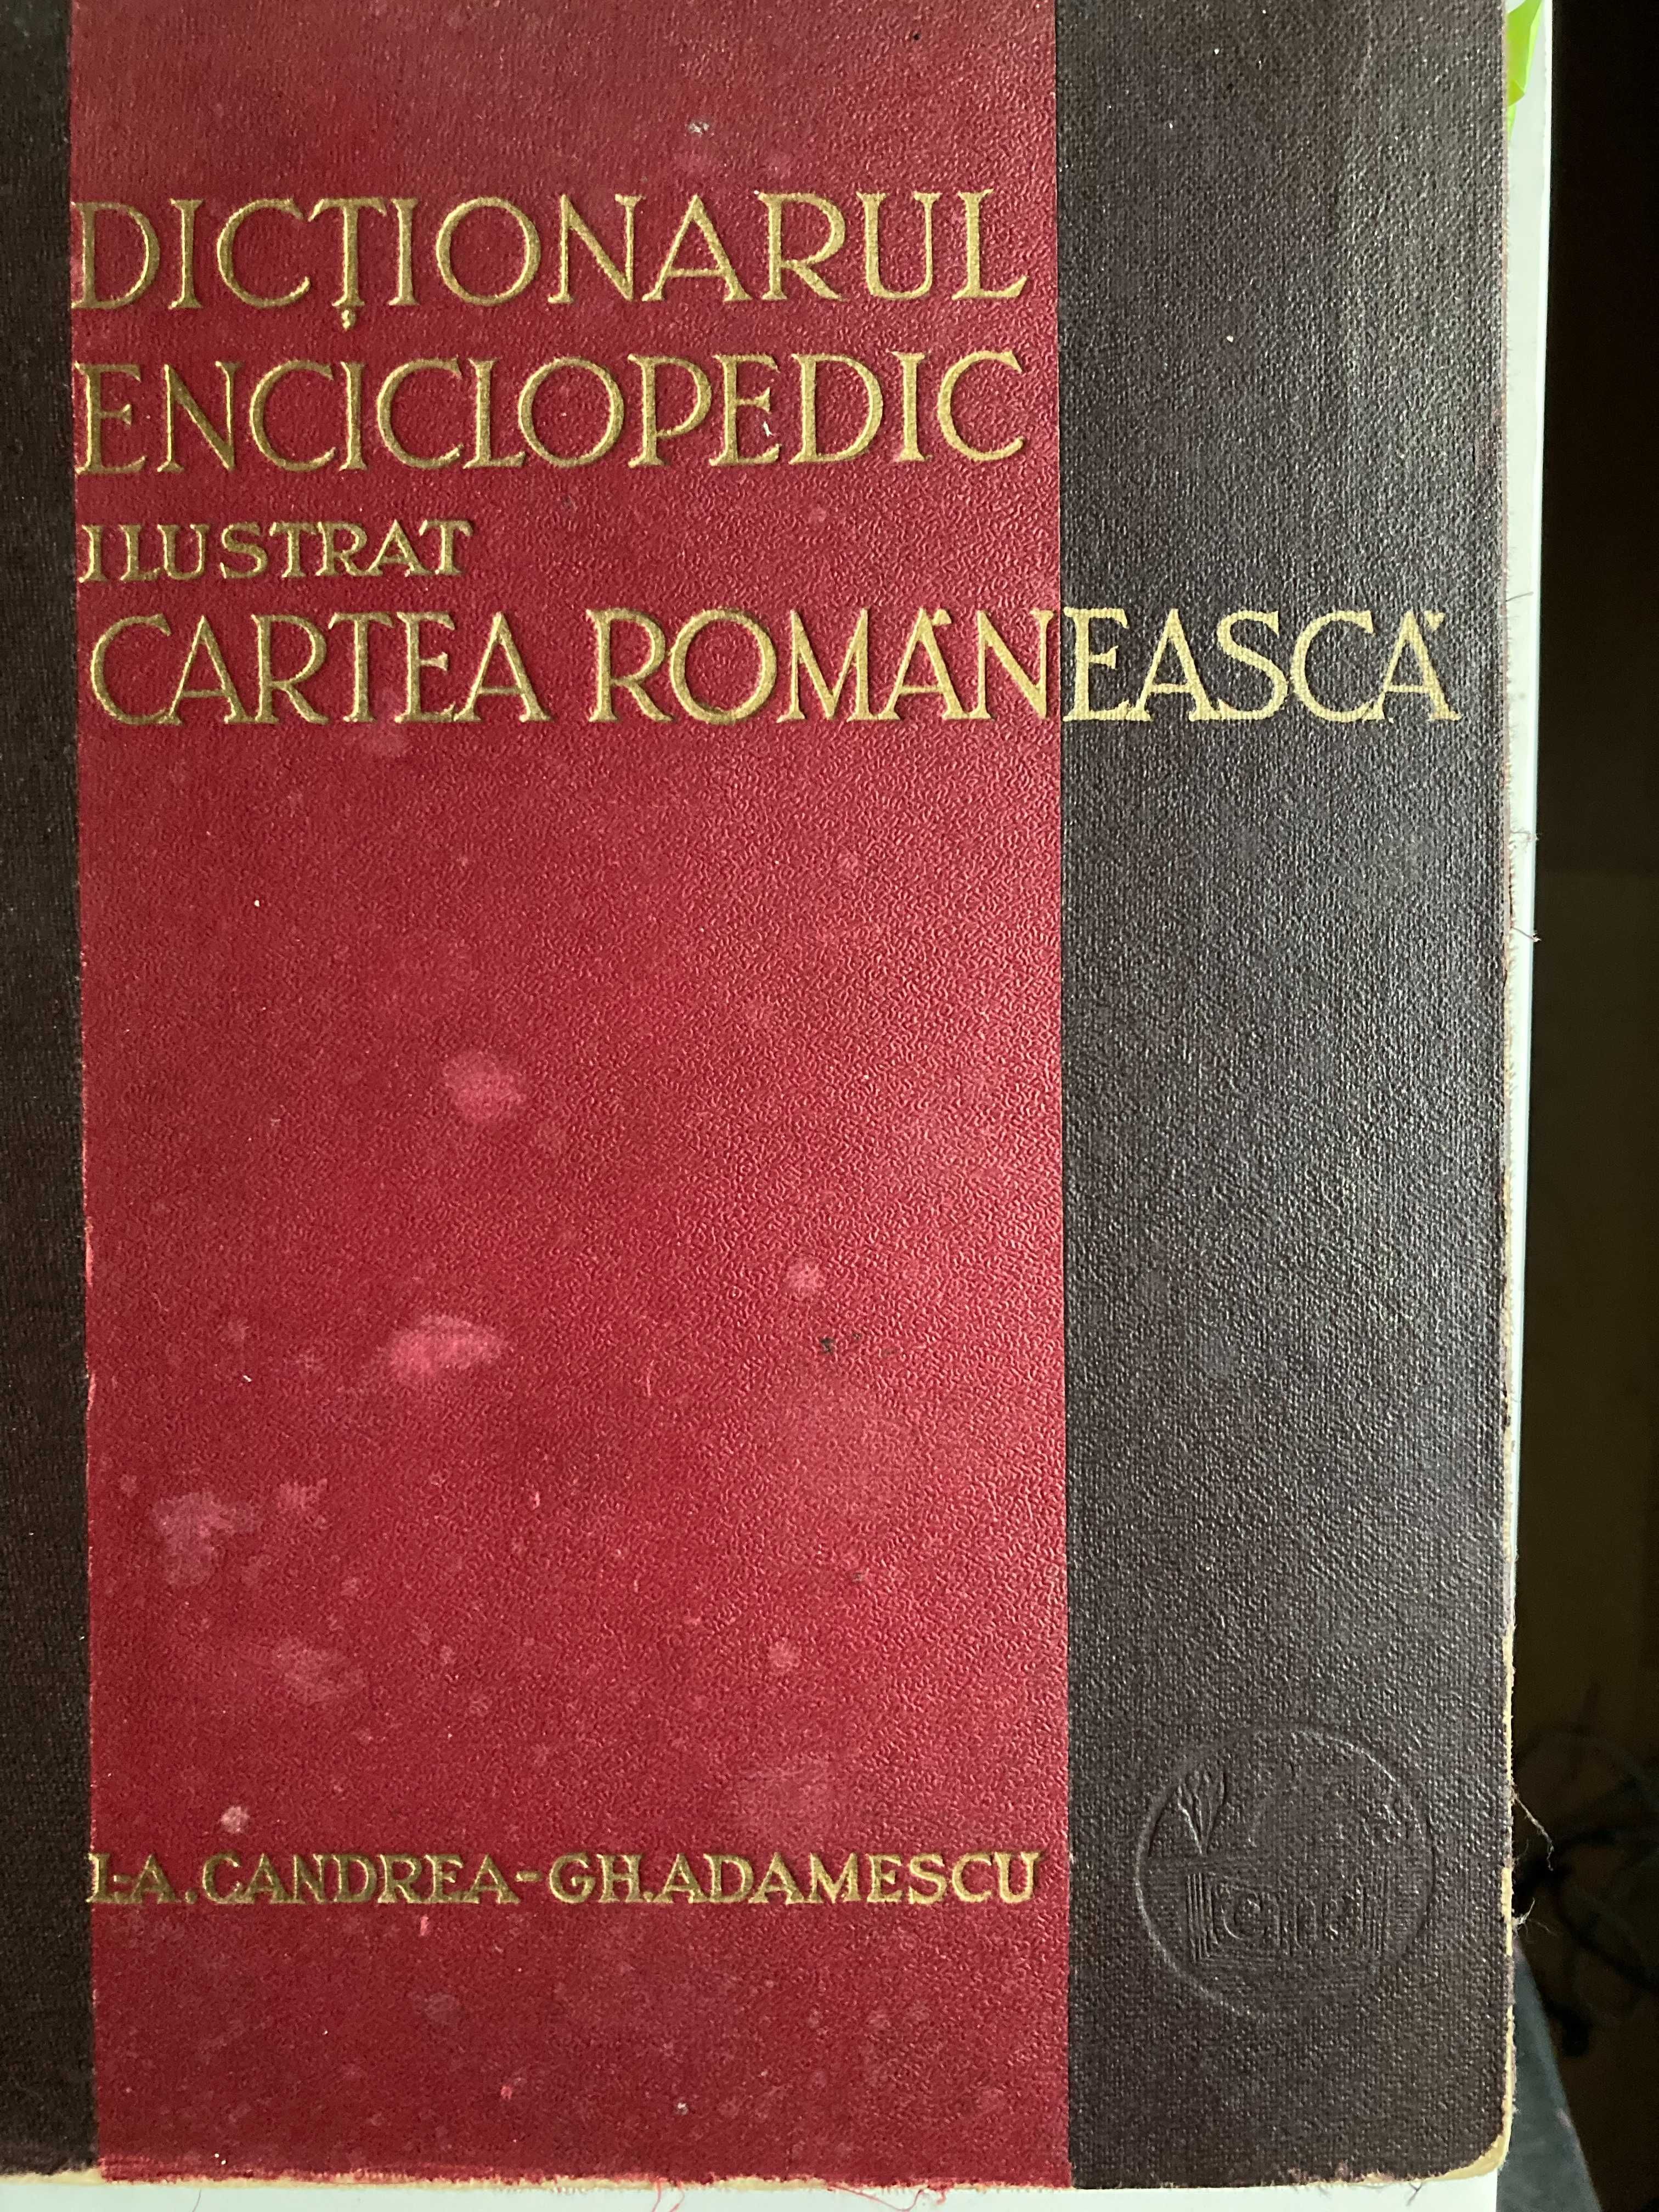 Dictionarul enciclopedic ilustrat - I. Candrea Gh. Adamescu